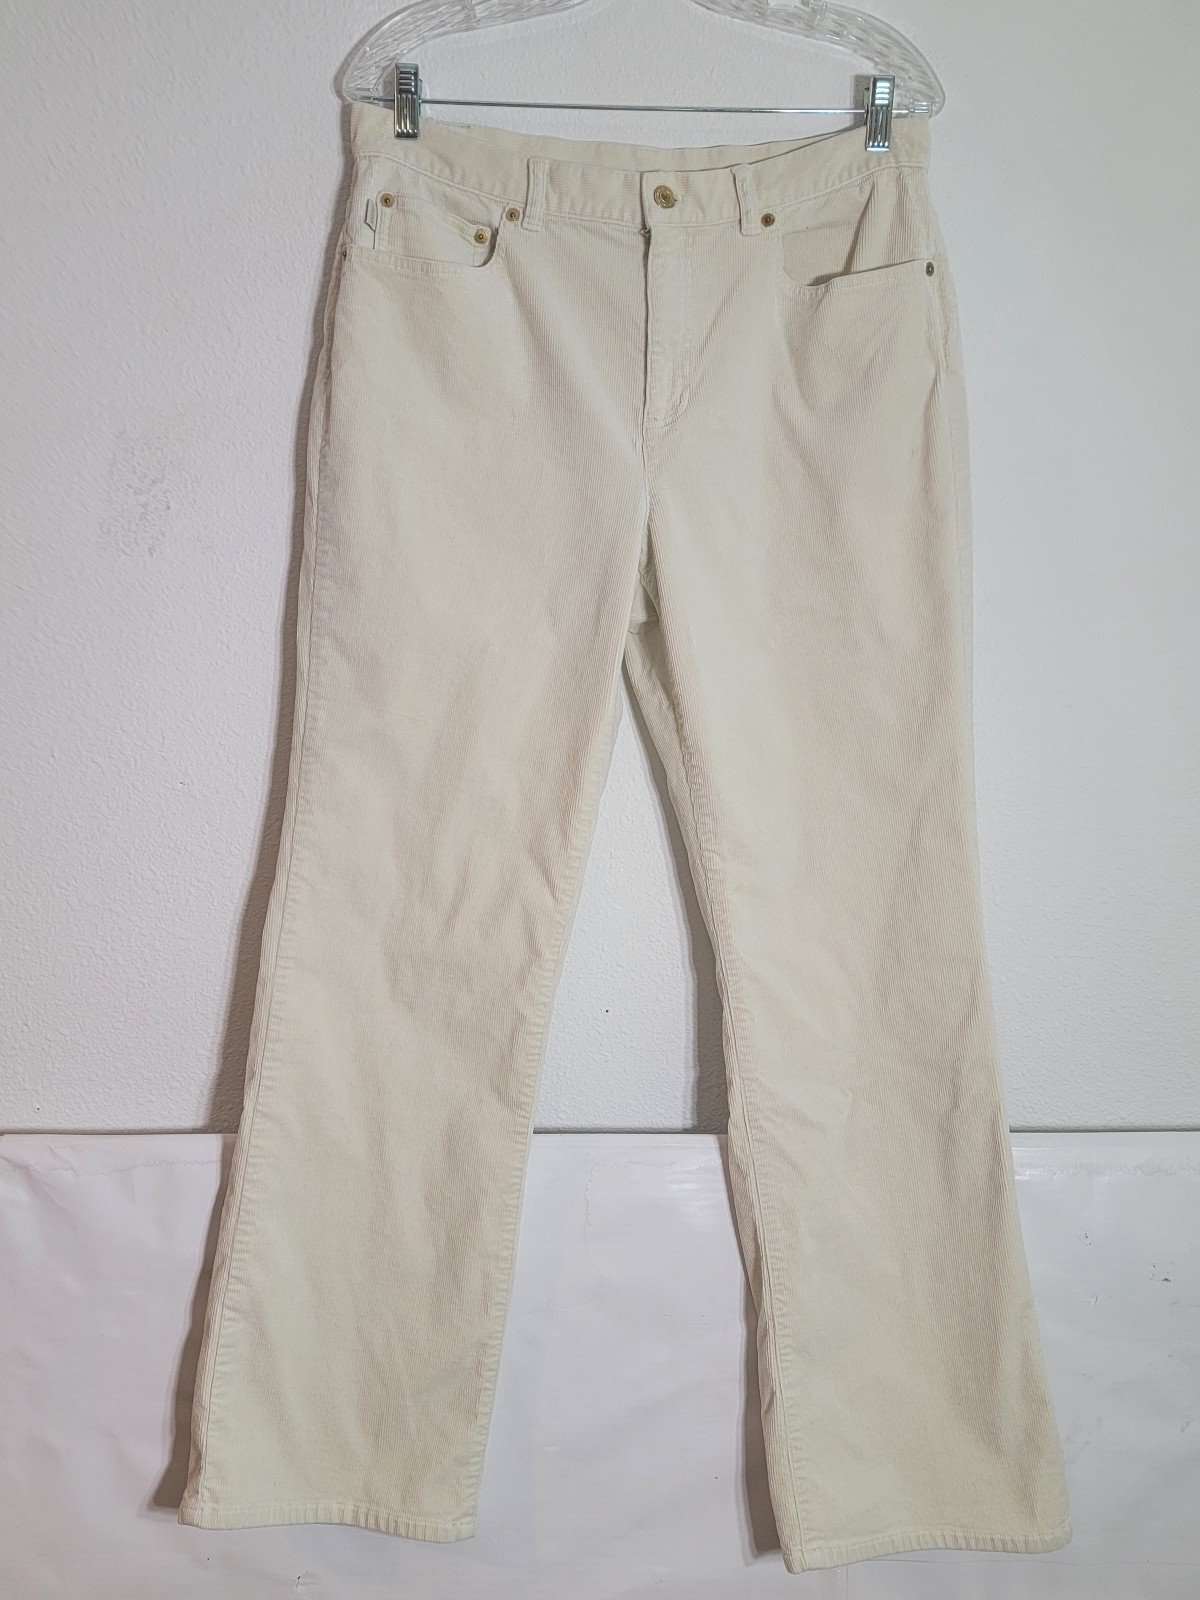 Latest  Ralph lauren lauren jeans co. women´s Corduroy pants size 12 straight leg nv08dfJZZ US Sale